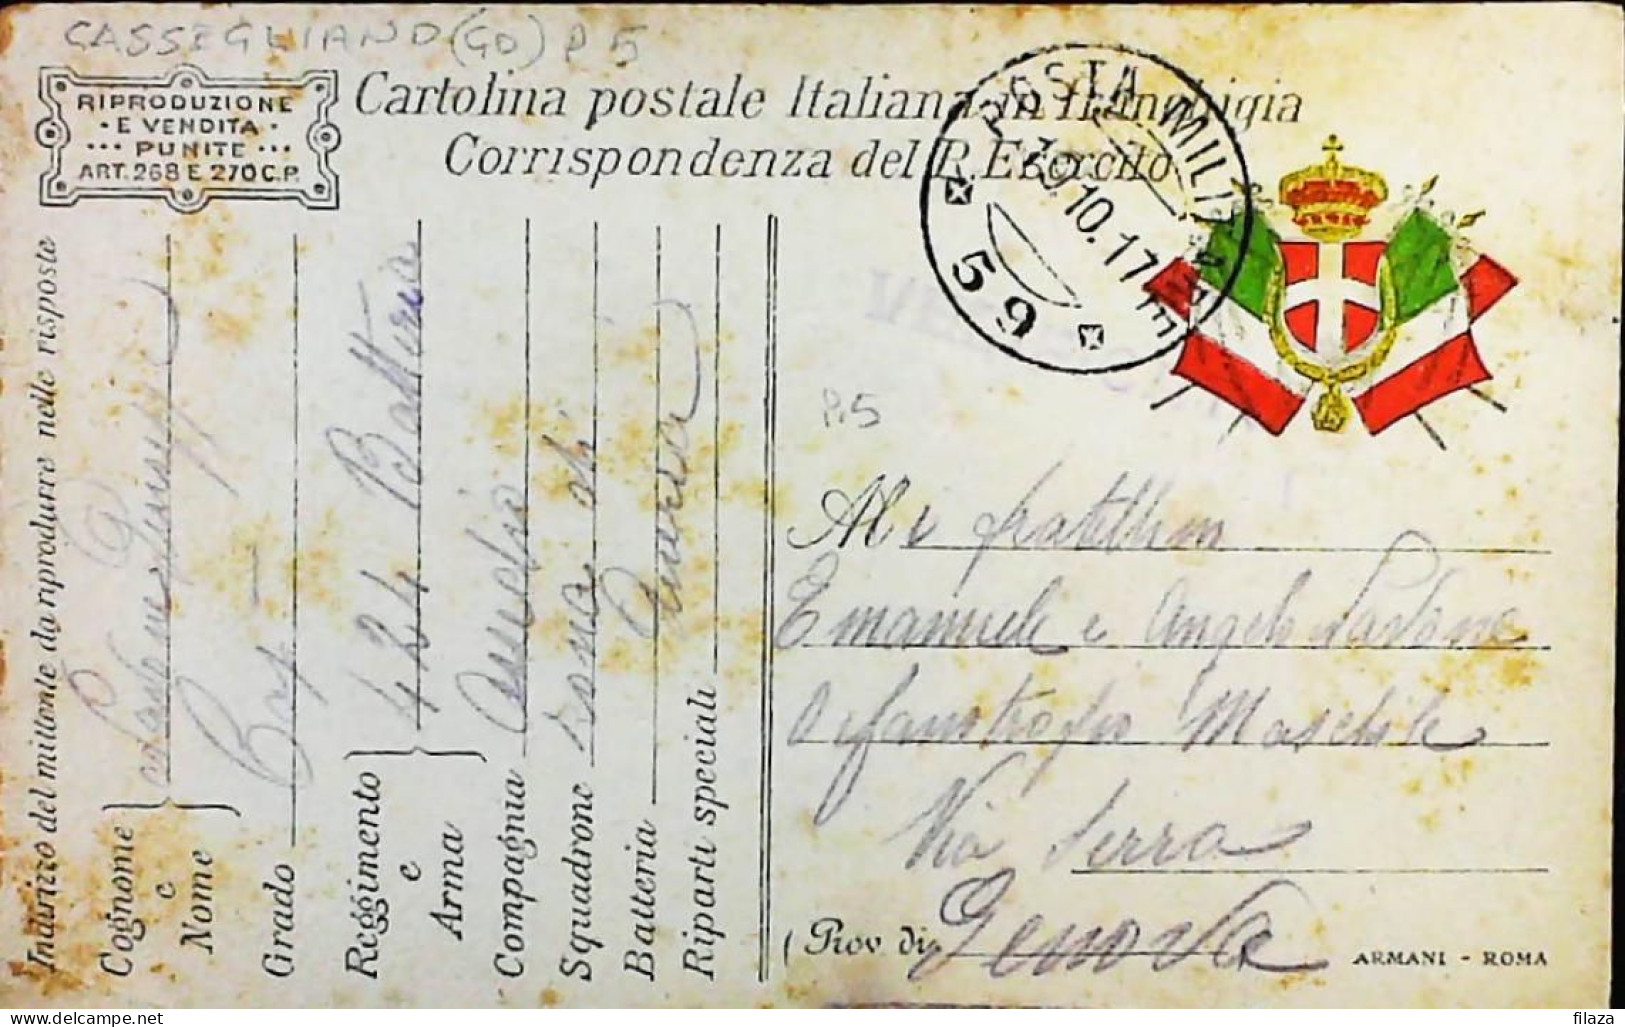 ITALY - WW1 – WWI Posta Militare 1915-1918 – S7968 - Militärpost (MP)